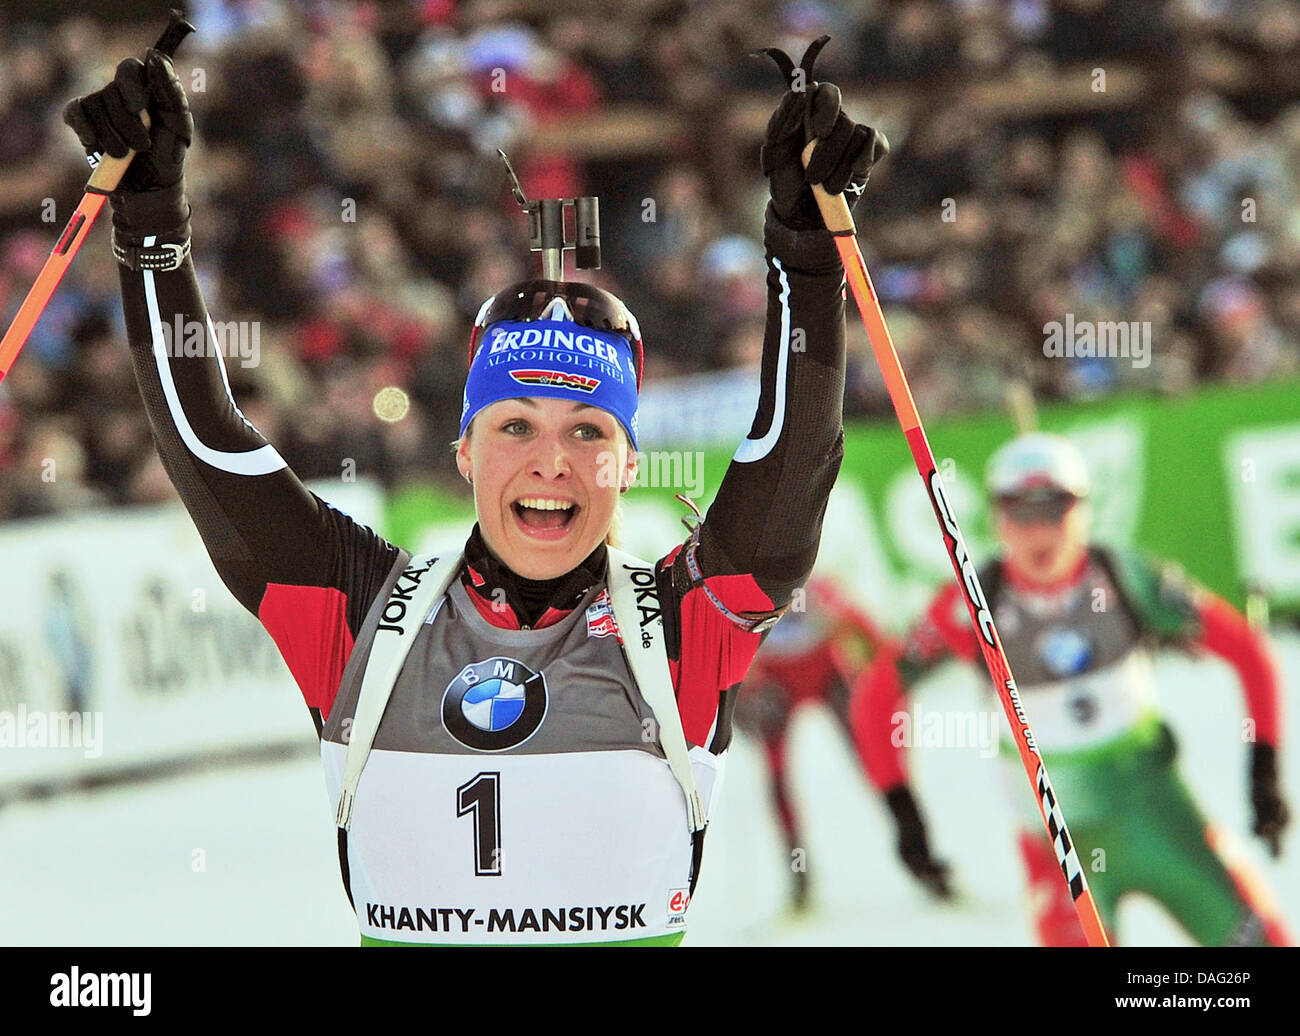 Magdalena Neuner Deutschland feiert nach der Frauen 12,5 km Massenstart bei den Biathlon-Weltmeisterschaften in A.V. Philipenko Winter Sports Centre in Chanty-Mansijsk, Russland, 12. März 2011. Foto: Martin Schutt Stockfoto